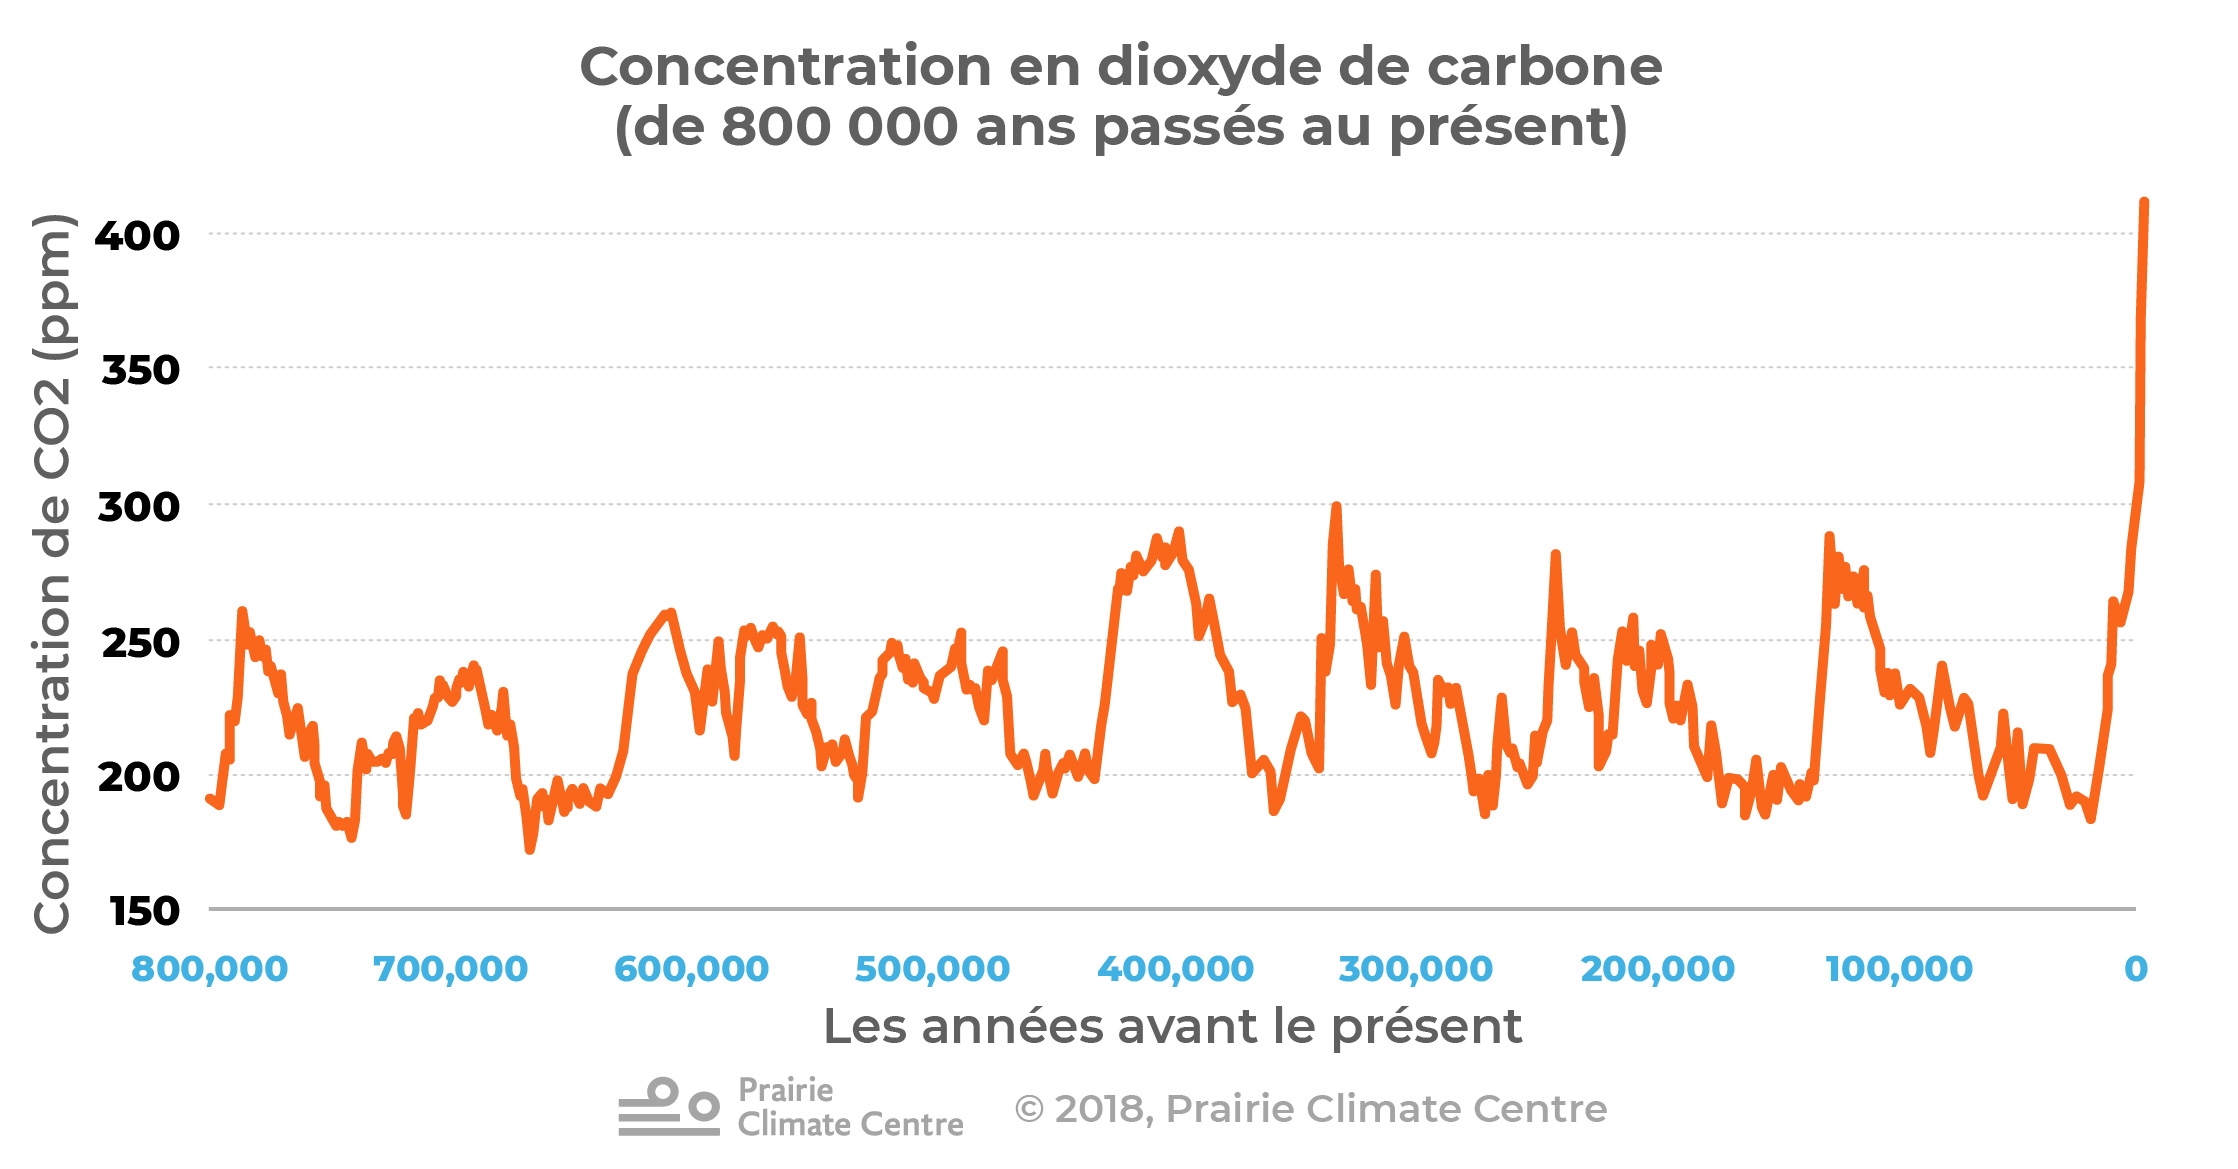 Contentration en dioxyde de carbonne (de 800 000 ans passés au present)